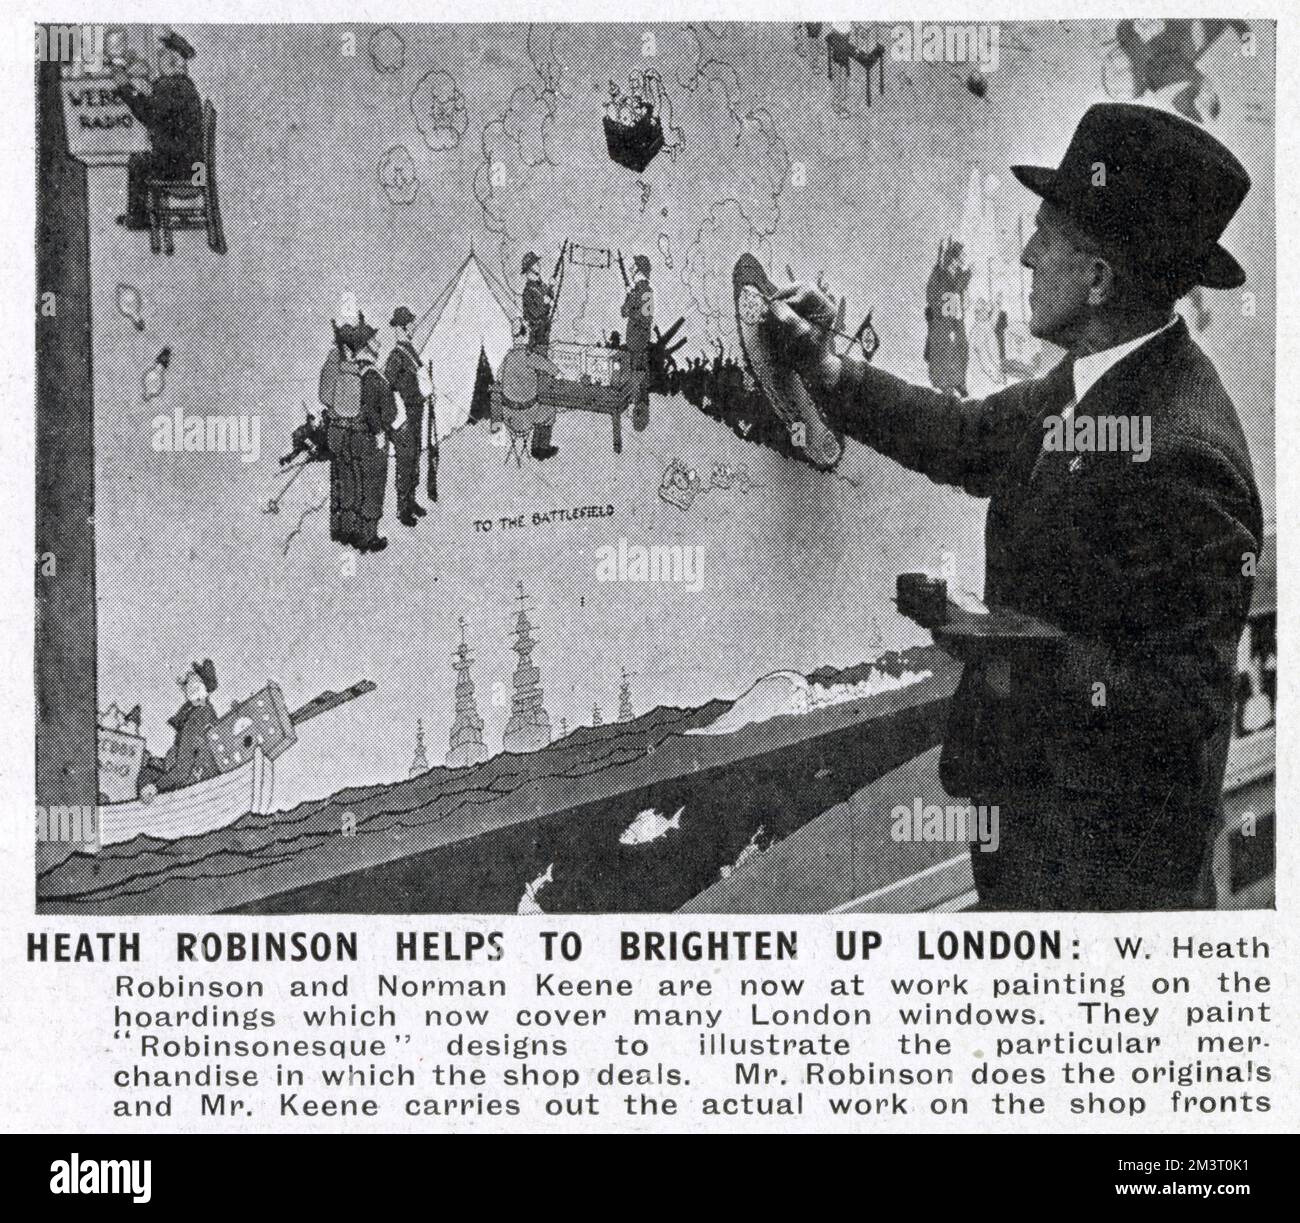 Der Künstler Norman Keene repliziert die Originalzeichnungen von William Heath Robinson an verkleideten Ladenfronten in London. Heath Robinson entwarf Bilder, um die besondere Ware im Geschäft zu illustrieren, und Keene führte die eigentlichen Arbeiten an der Ladenfront durch. Datum: Dezember 1940 Stockfoto